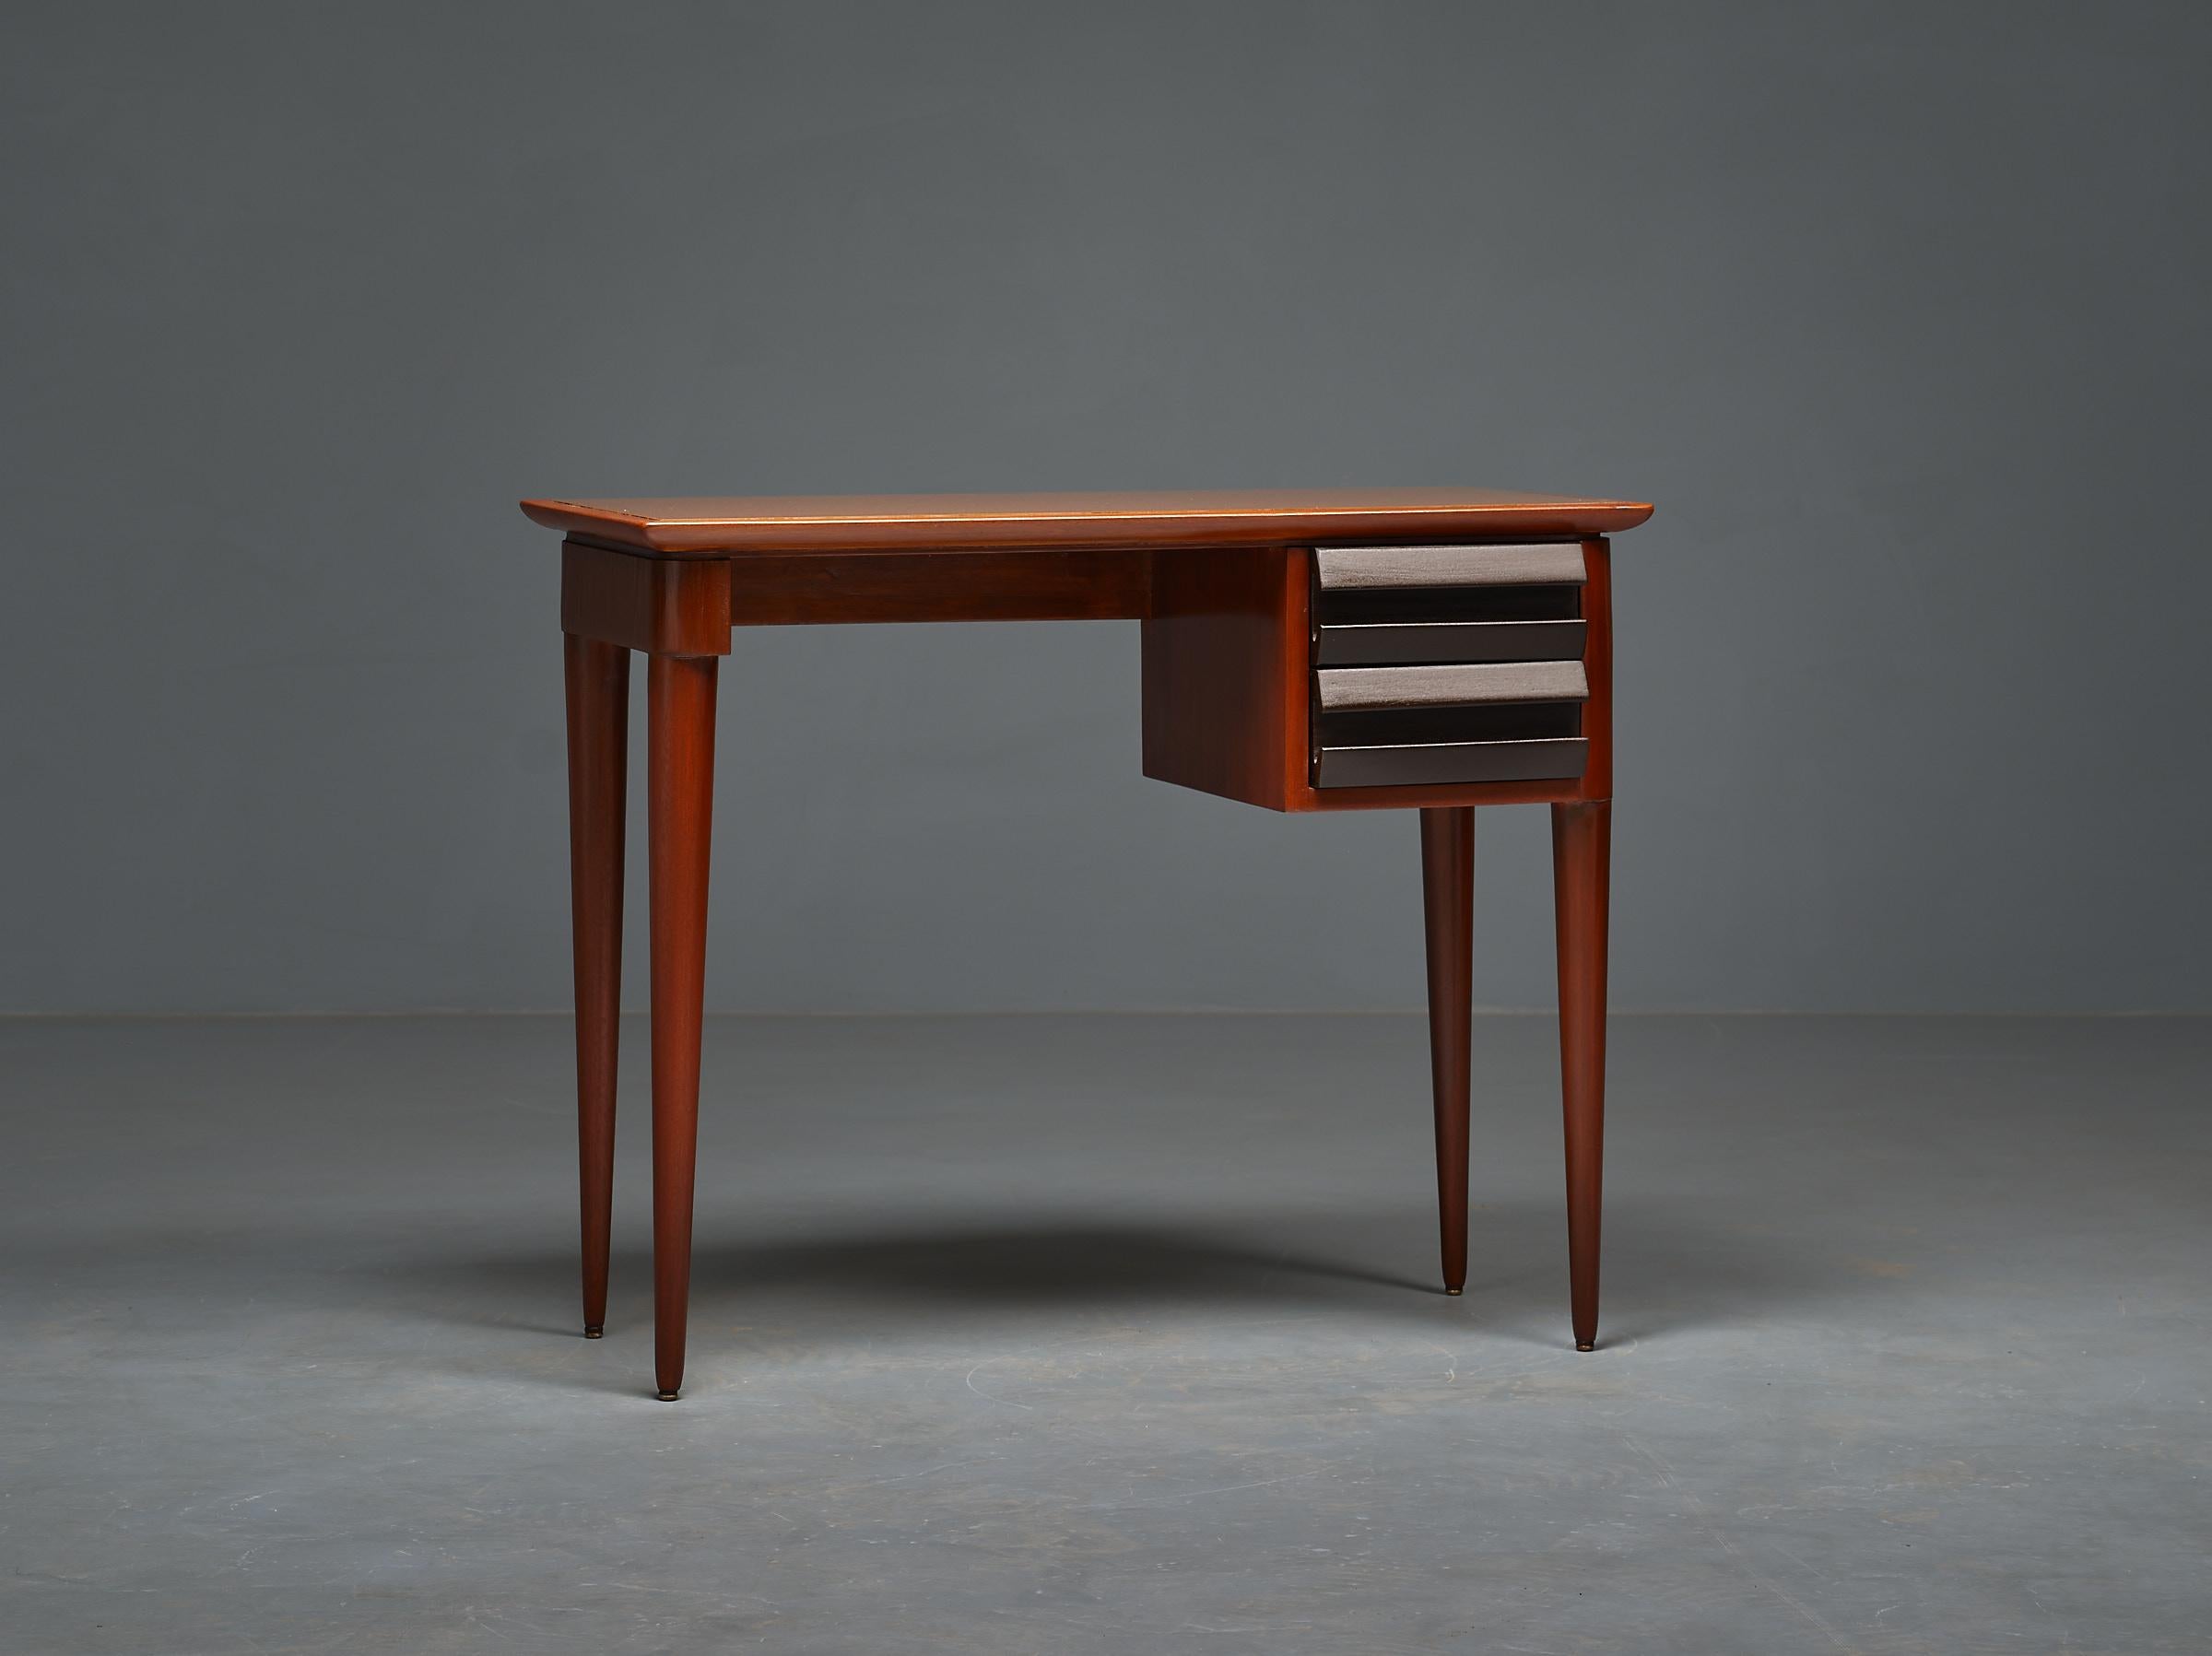 Mid-20th Century 1950s Italian Design Desk by Vittorio Dassi - Exquisite, Elegant, and Restored